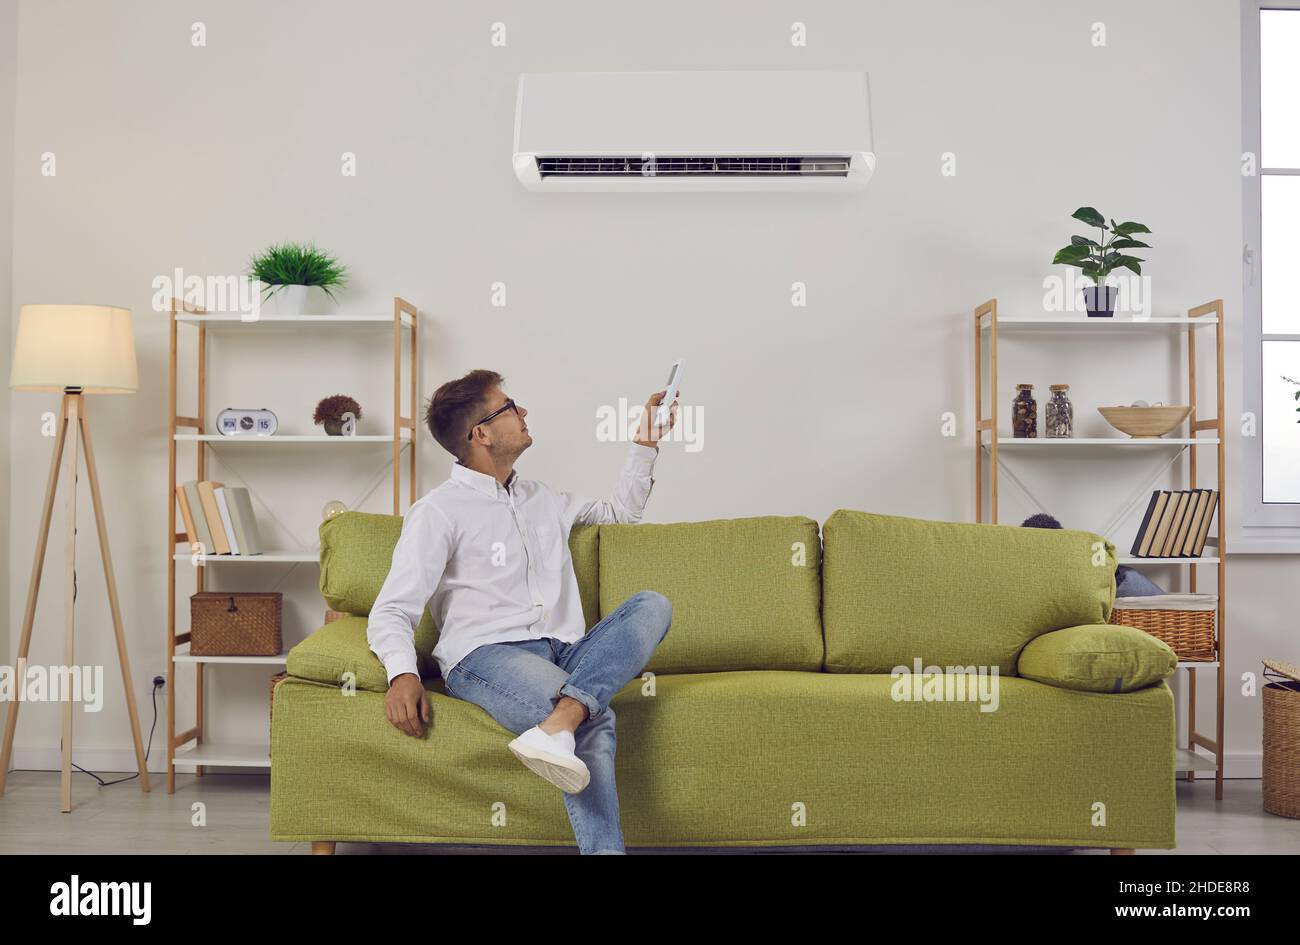 Der Mann, der zu Hause auf dem Sofa sitzt, schaltet per Fernbedienung die Klimaanlage an der Wand ein Stockfoto